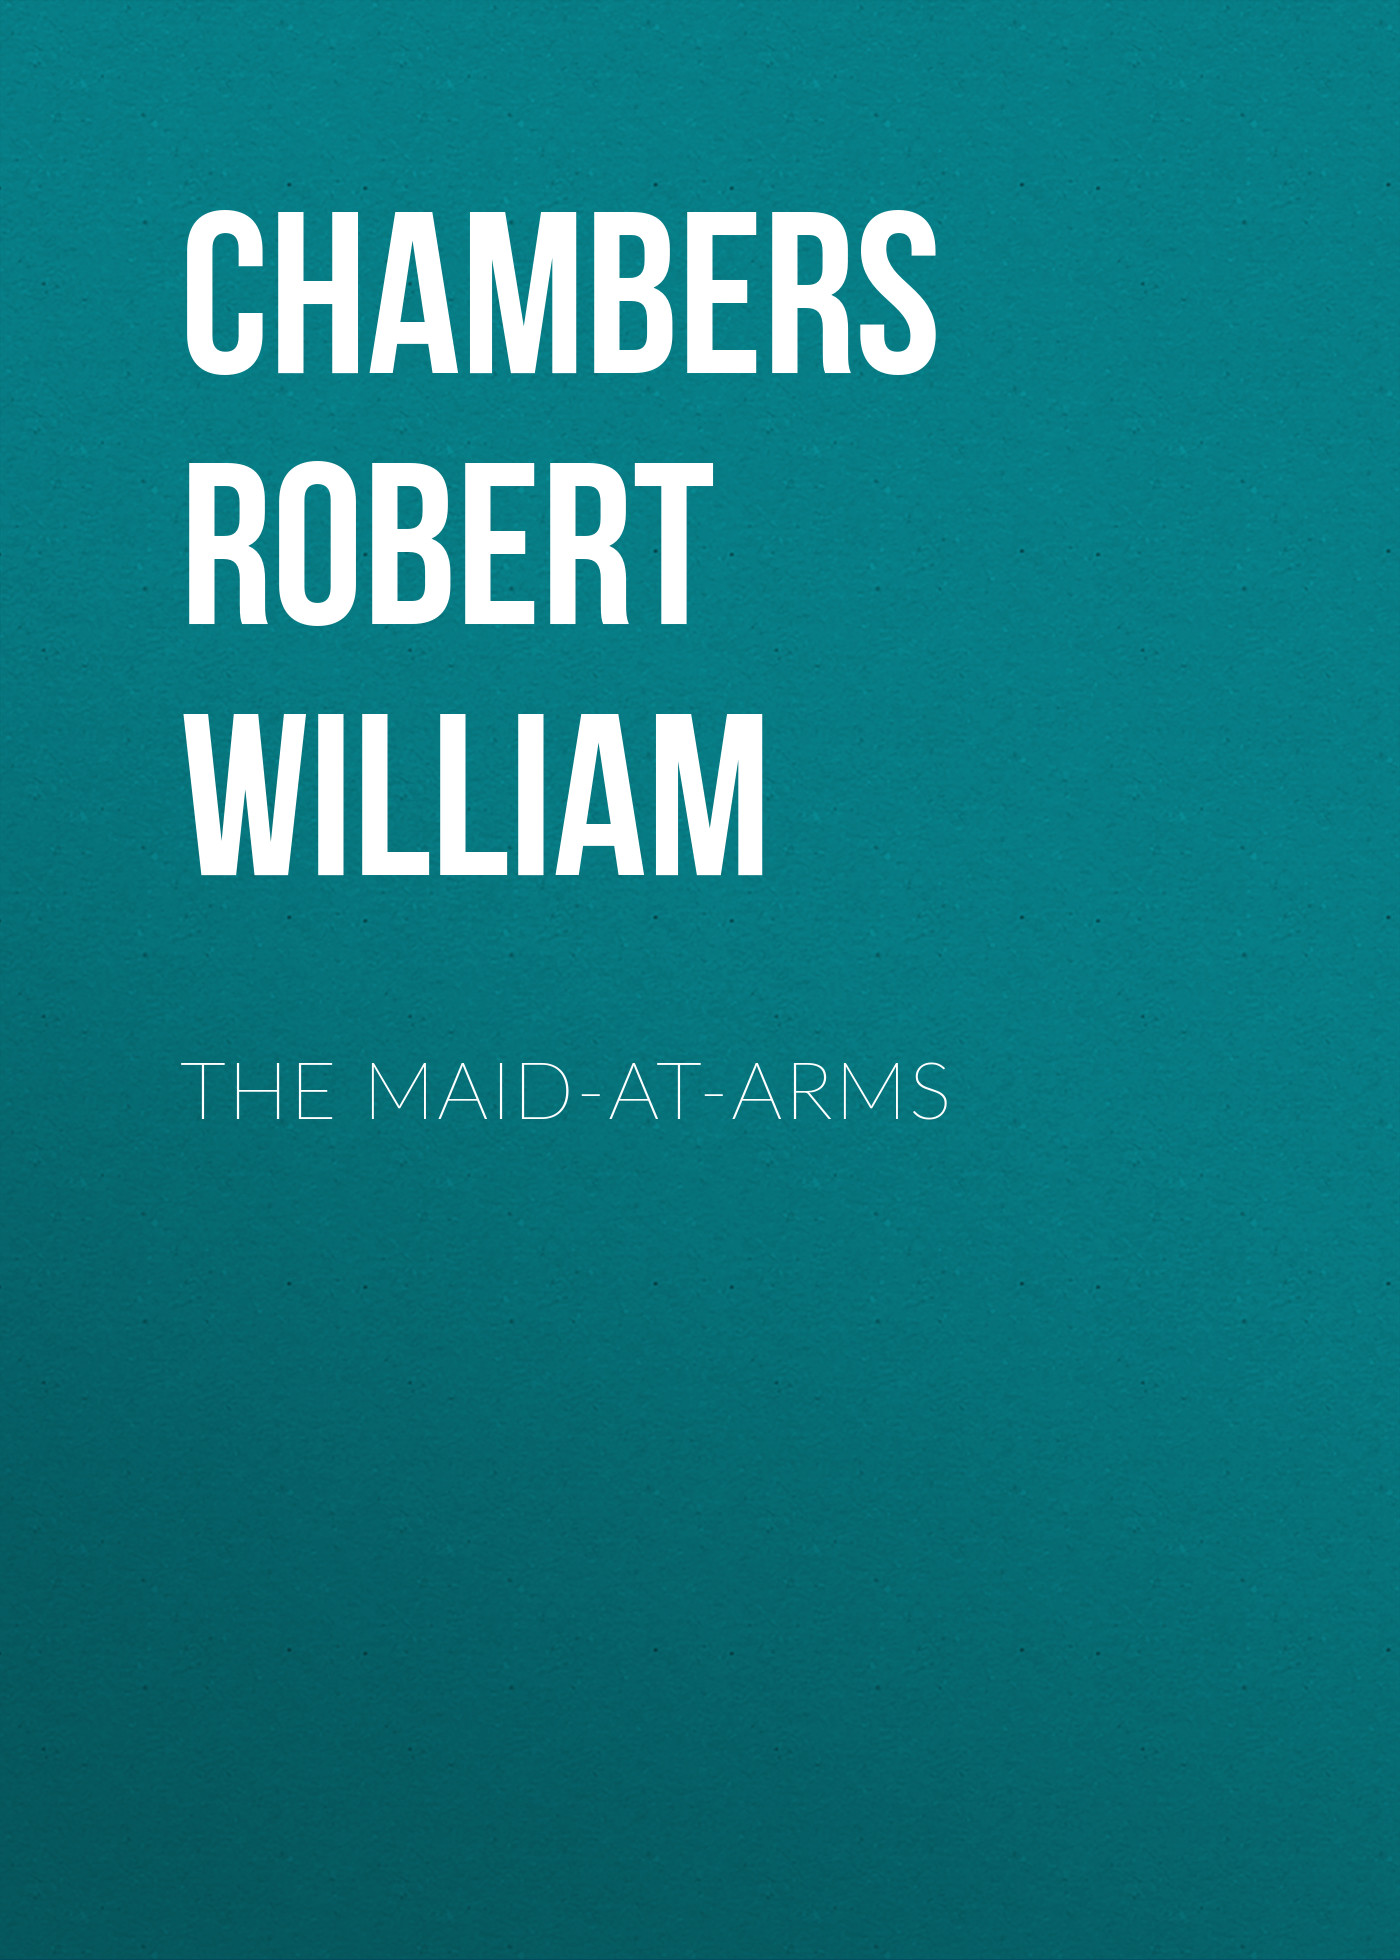 Книга The Maid-At-Arms из серии , созданная Robert Chambers, написана в жанре Историческая фантастика, Зарубежная старинная литература, Зарубежная классика, Исторические приключения. Стоимость электронной книги The Maid-At-Arms с идентификатором 36322756 составляет 0 руб.